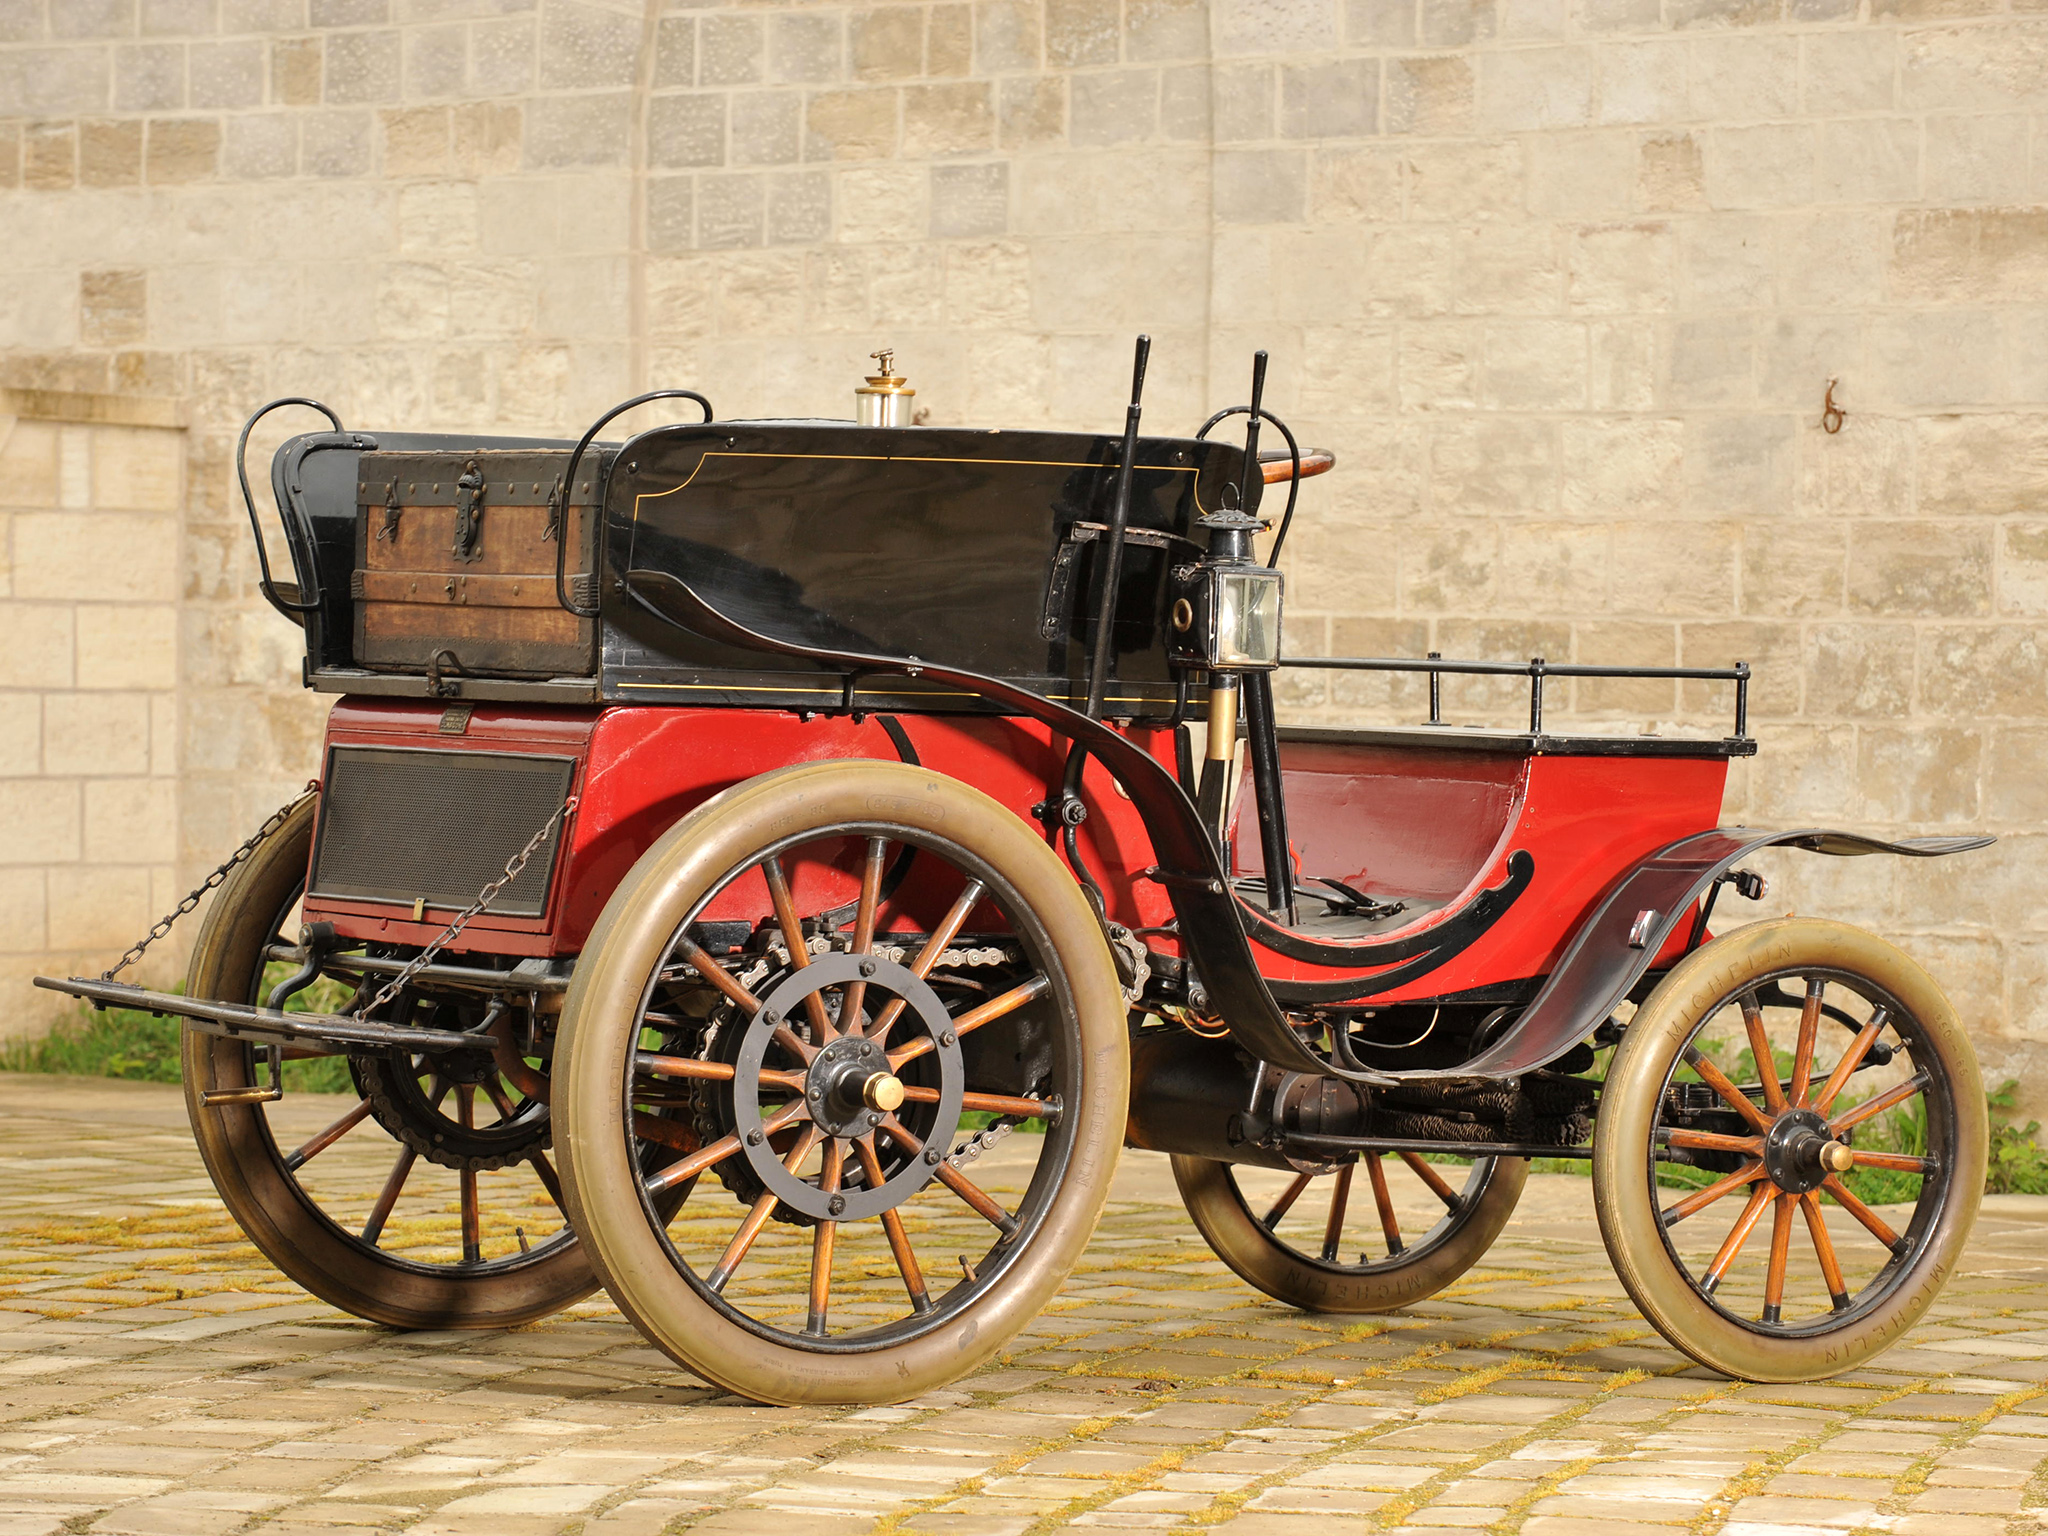 1901, Stirling, 5 hp, Dos a dos, Light, Dog, Cart, Retro Wallpaper